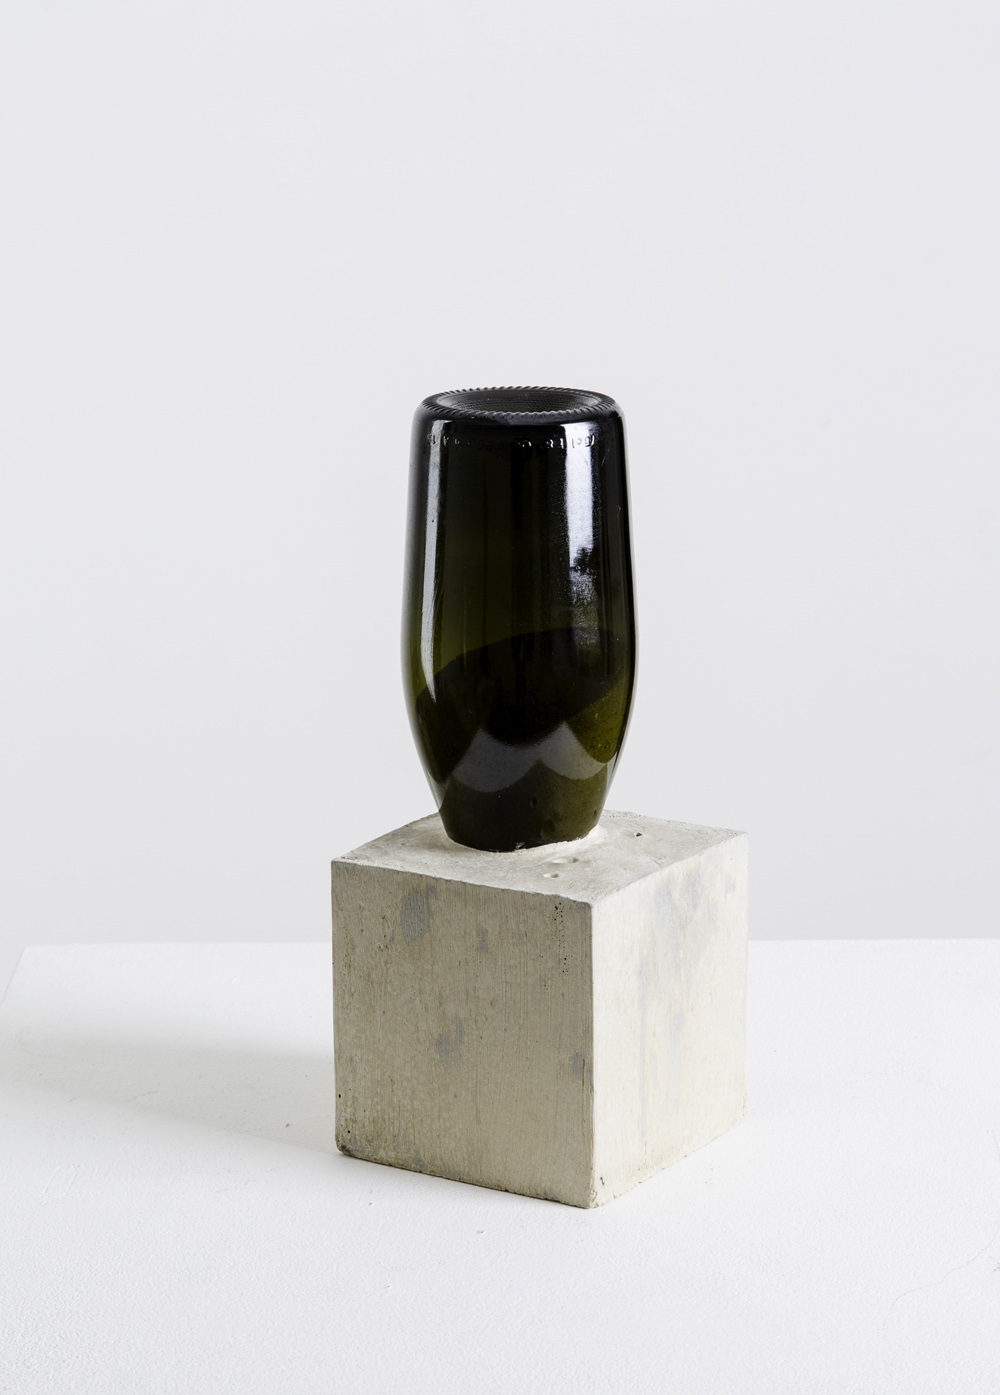  Alexandre da Cunha,&nbsp; 1622101115 ,&nbsp;2015,&nbsp;Sand, bottle, concrete,&nbsp;29.7 x 13 cm,&nbsp;Courtesy the artist and Thomas Dane Gallery, London 